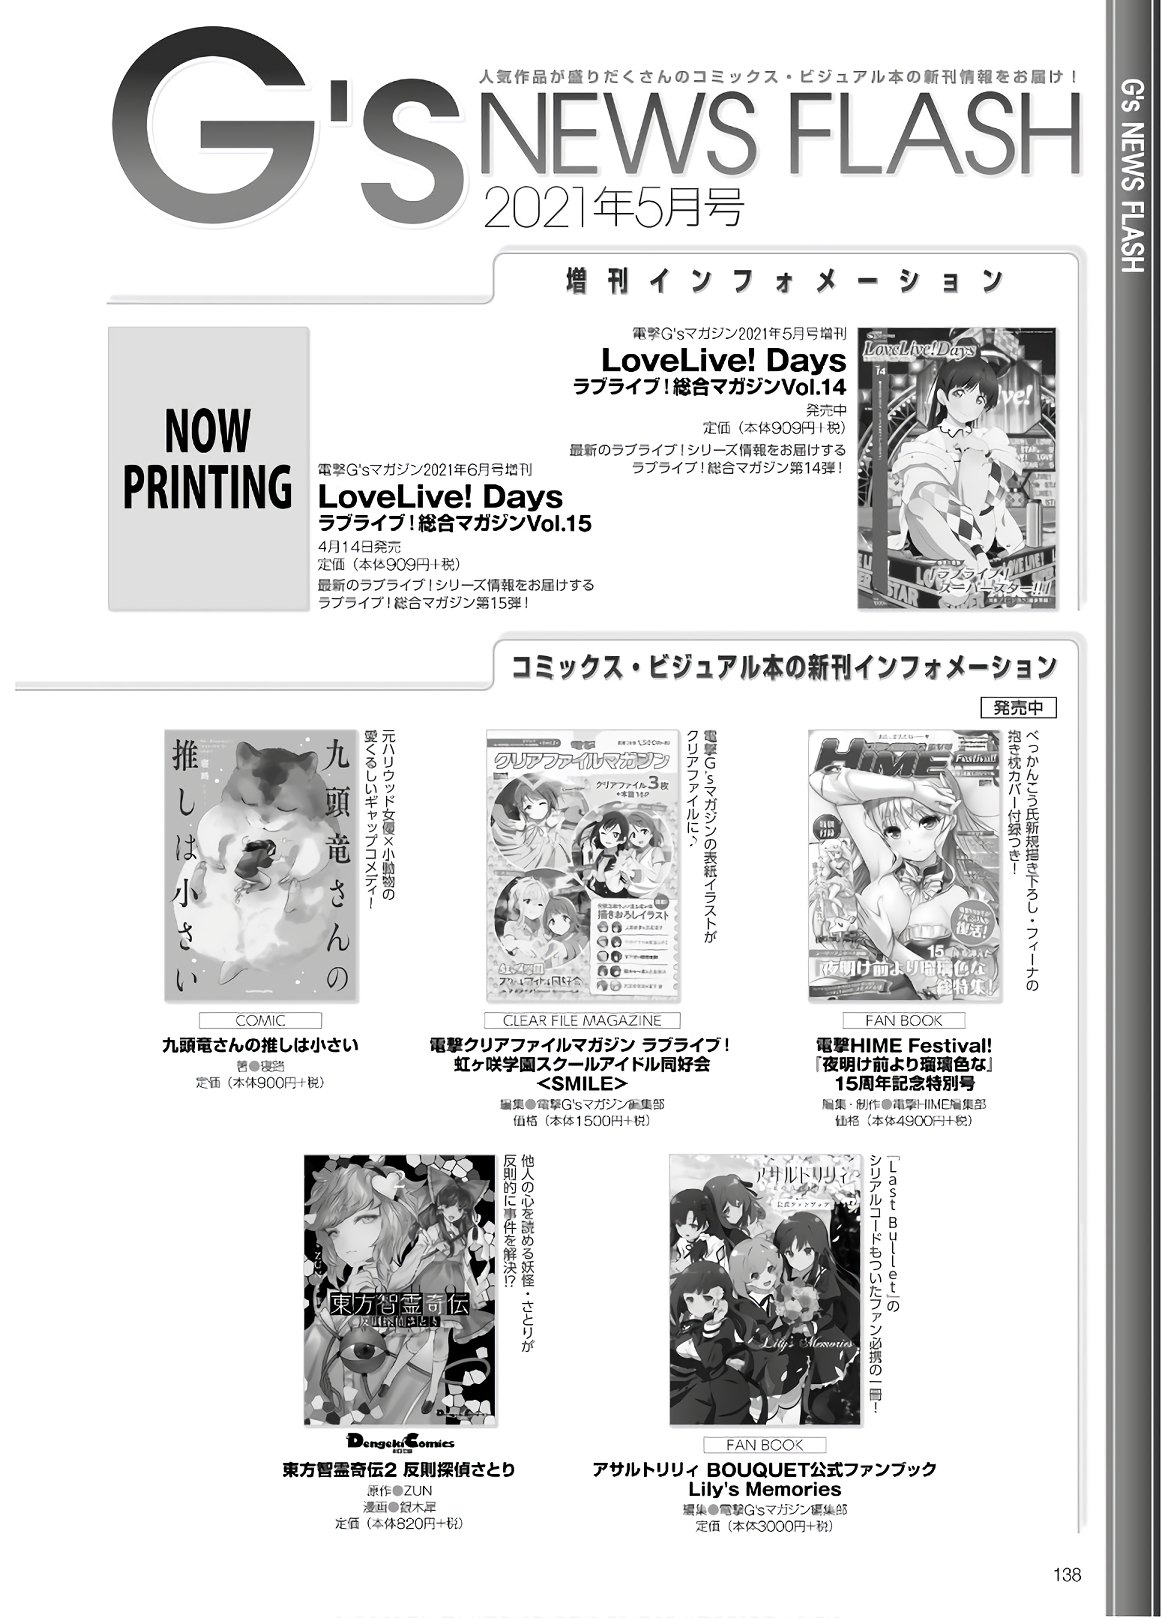 Dengeki G's Magazine #286 - May 2021 135